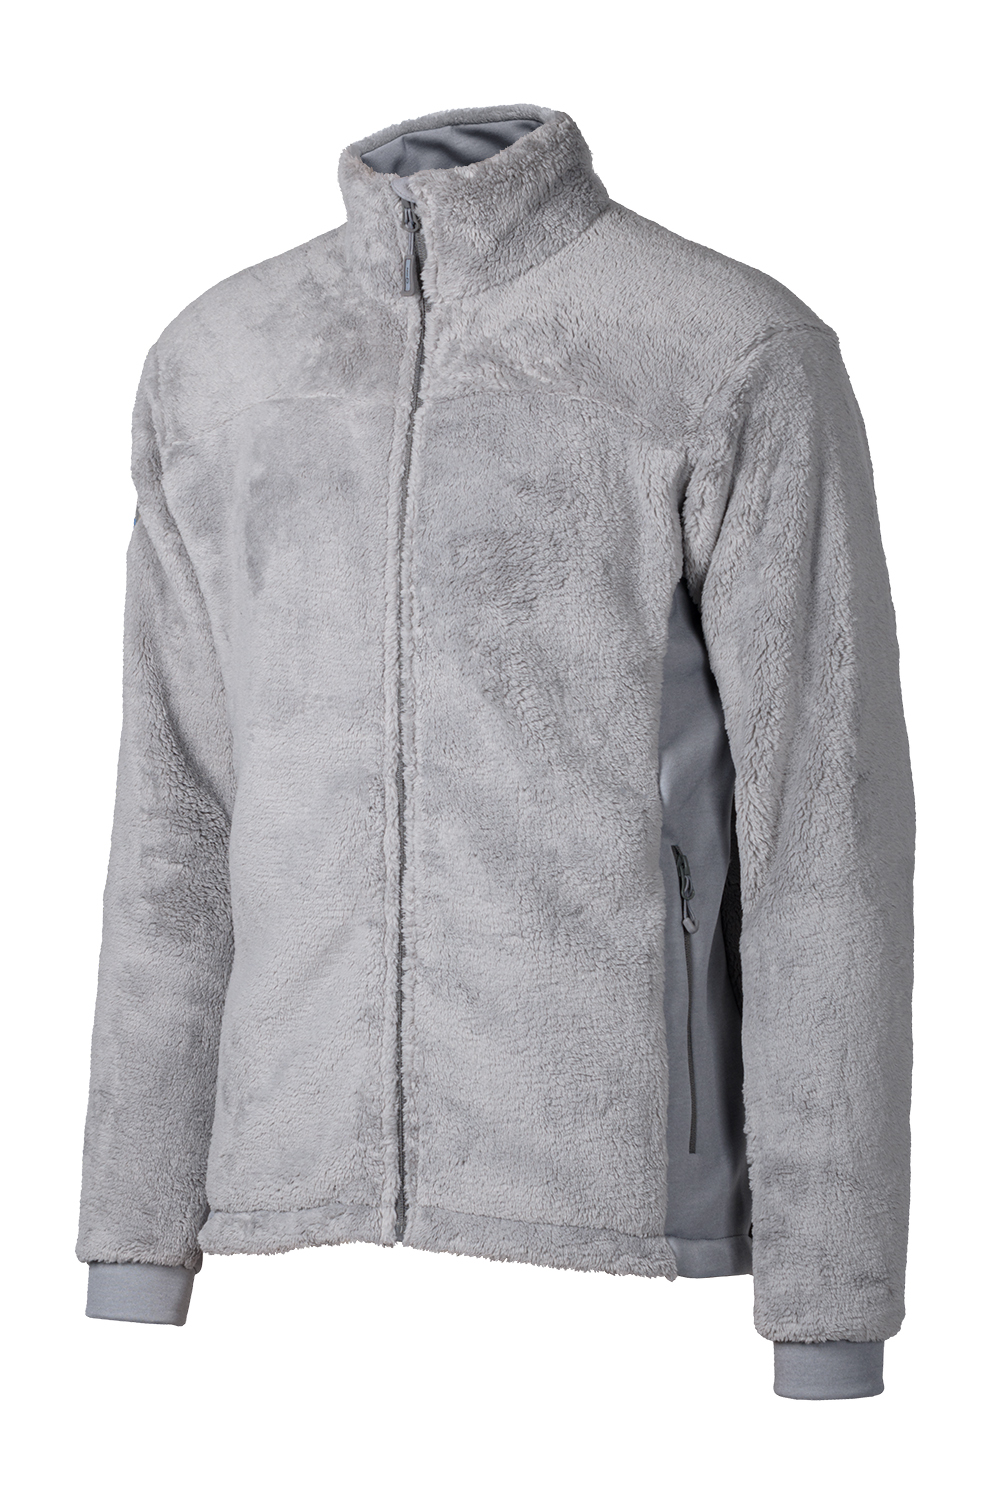 Теплая флисовая куртка Fuzzy купить в магазине экипировки для альпинизма и туризма O3 Ozone